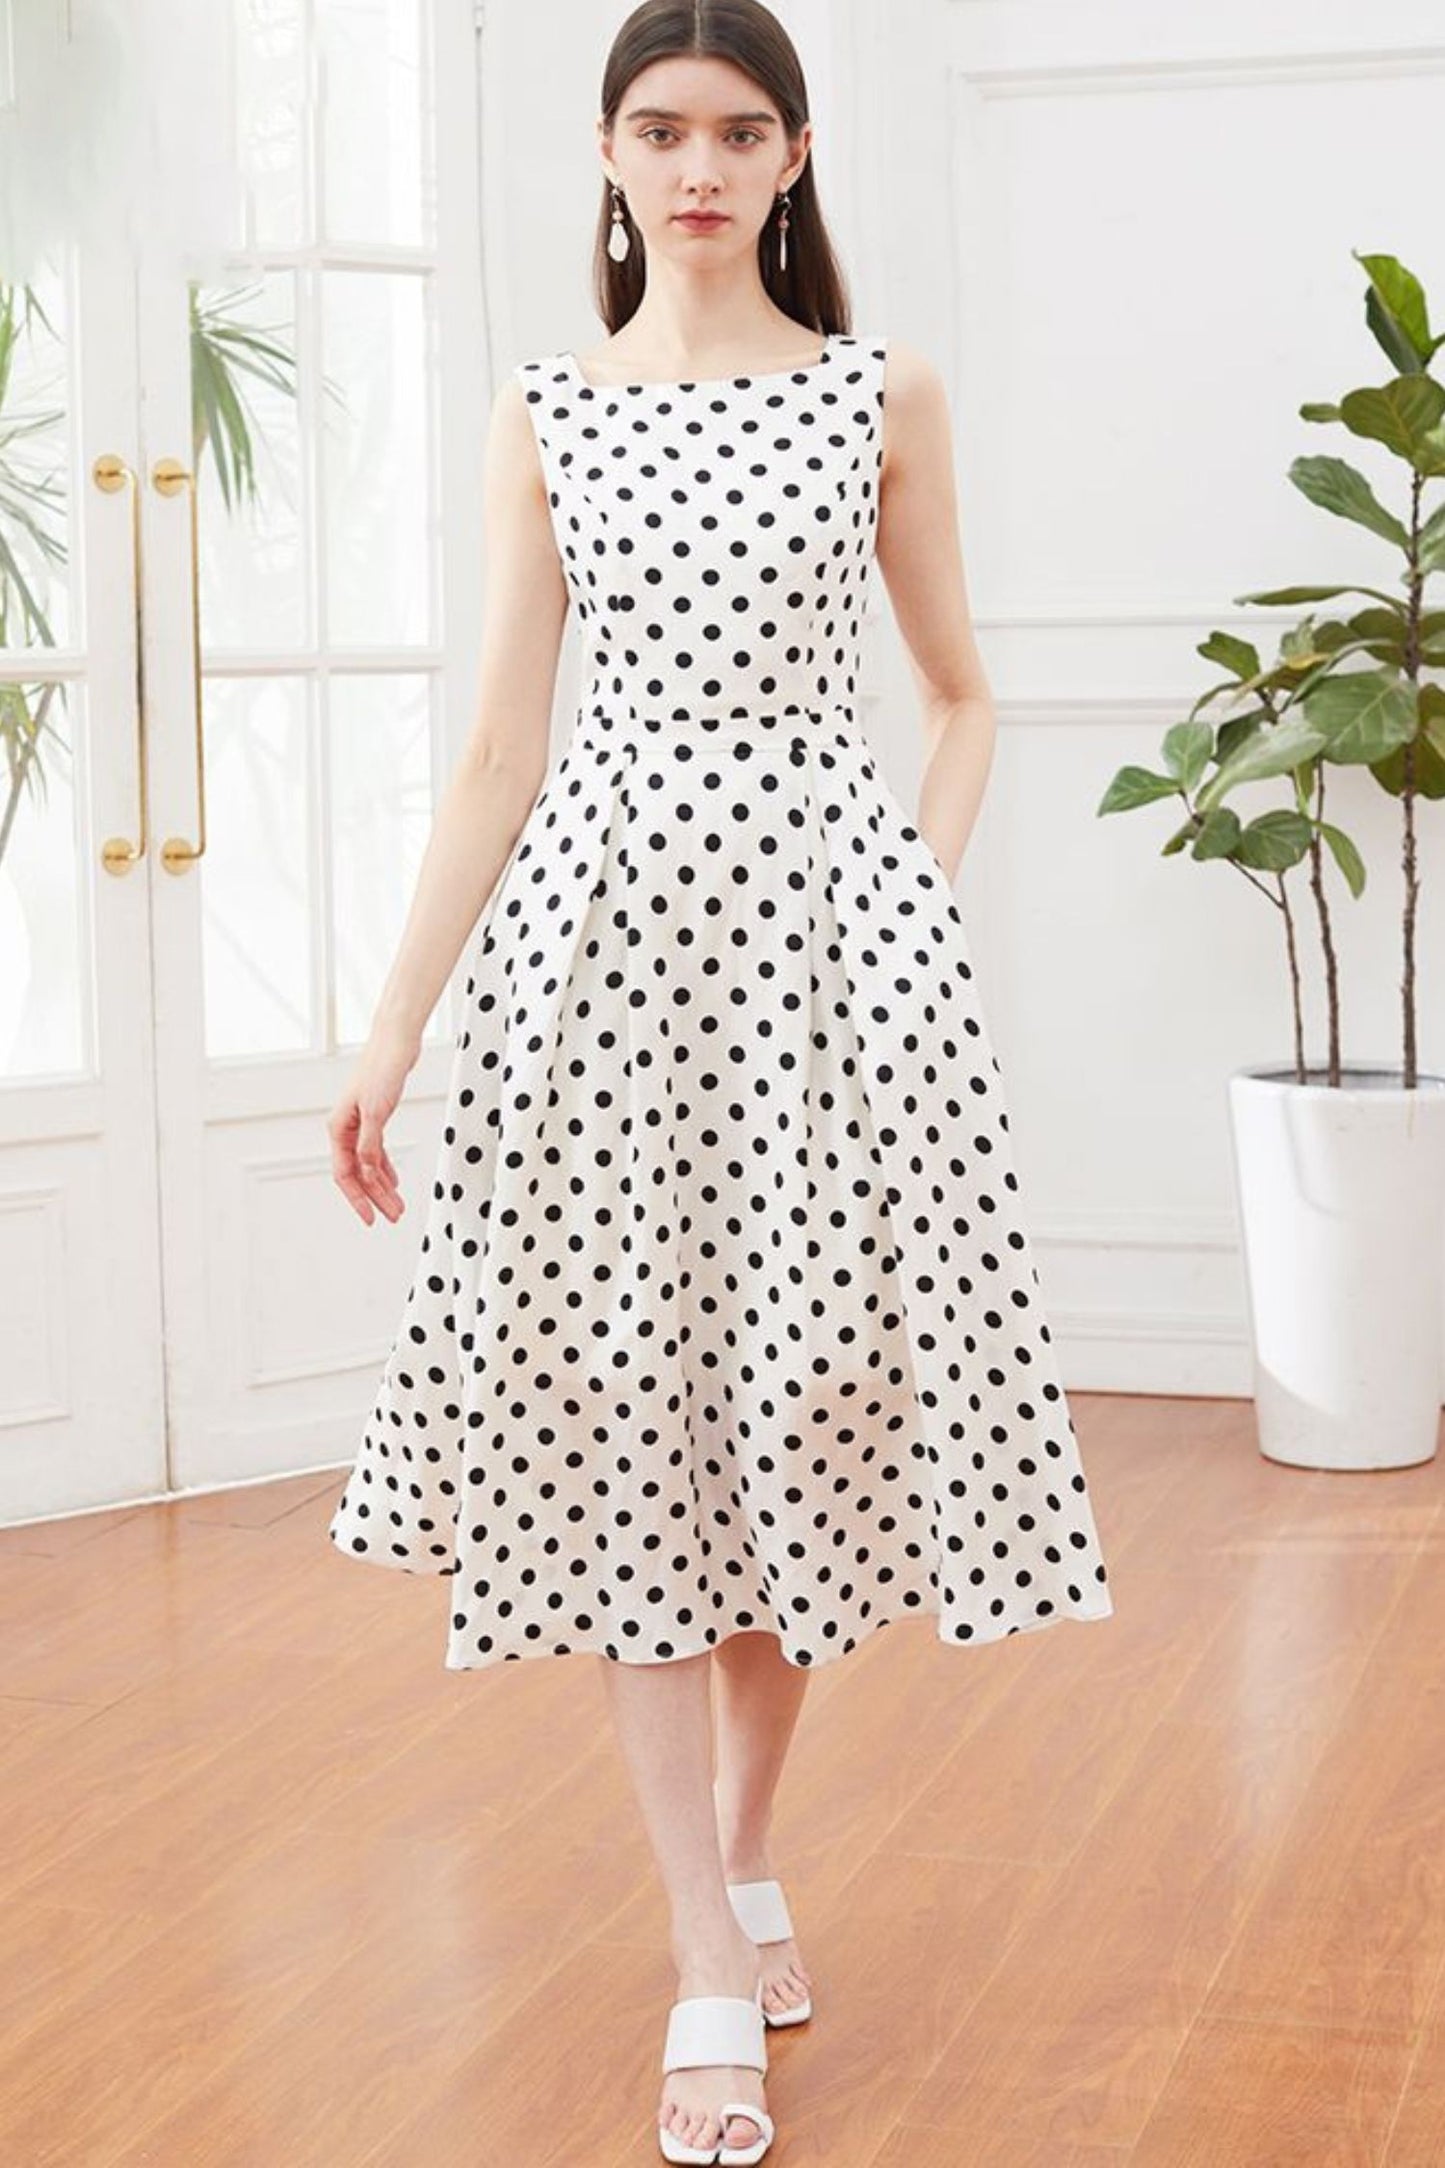 Black and white polka dot linen summer dress 5140